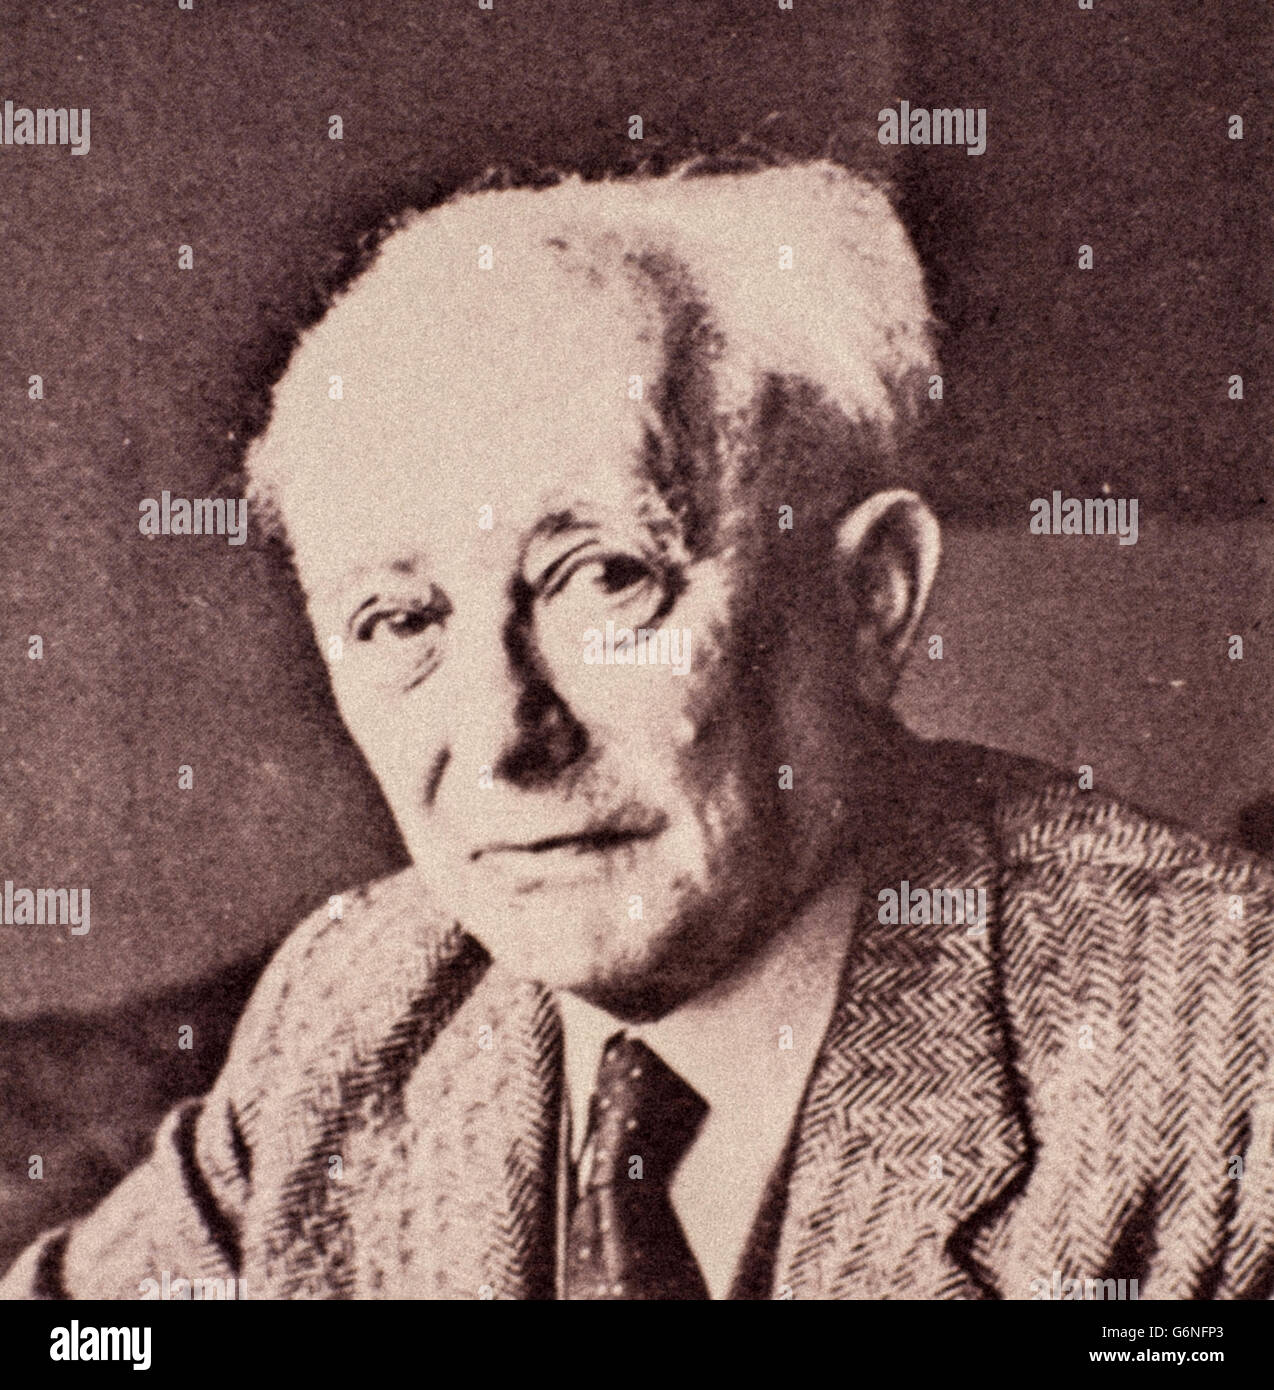 Max Born (Breslau, 11. Dezember 1882 - Göttingen, 5. Januar 1970) war ein deutscher Physiker und Mathematiker eingebürgerte Briten, Nobelpreis für Physik 1954 für wichtige Forschungen in der Quantenmechanik und vor allem die statistische Interpretation der Wellenfunktion. Stockfoto